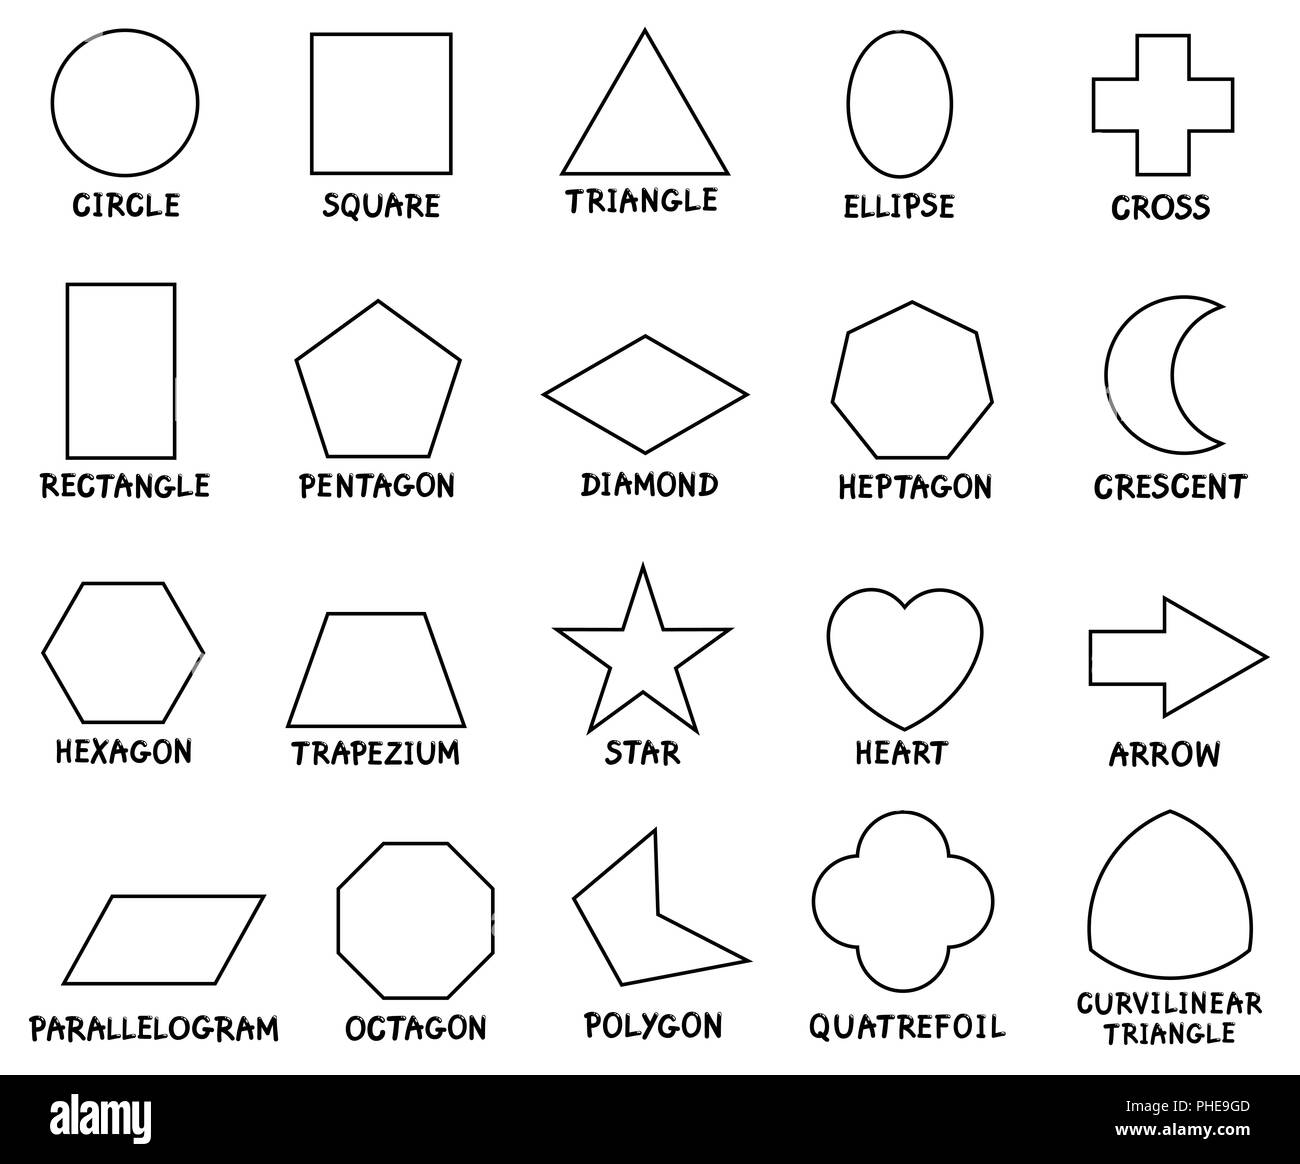 education basic geometric shapes with captions Stock Photo